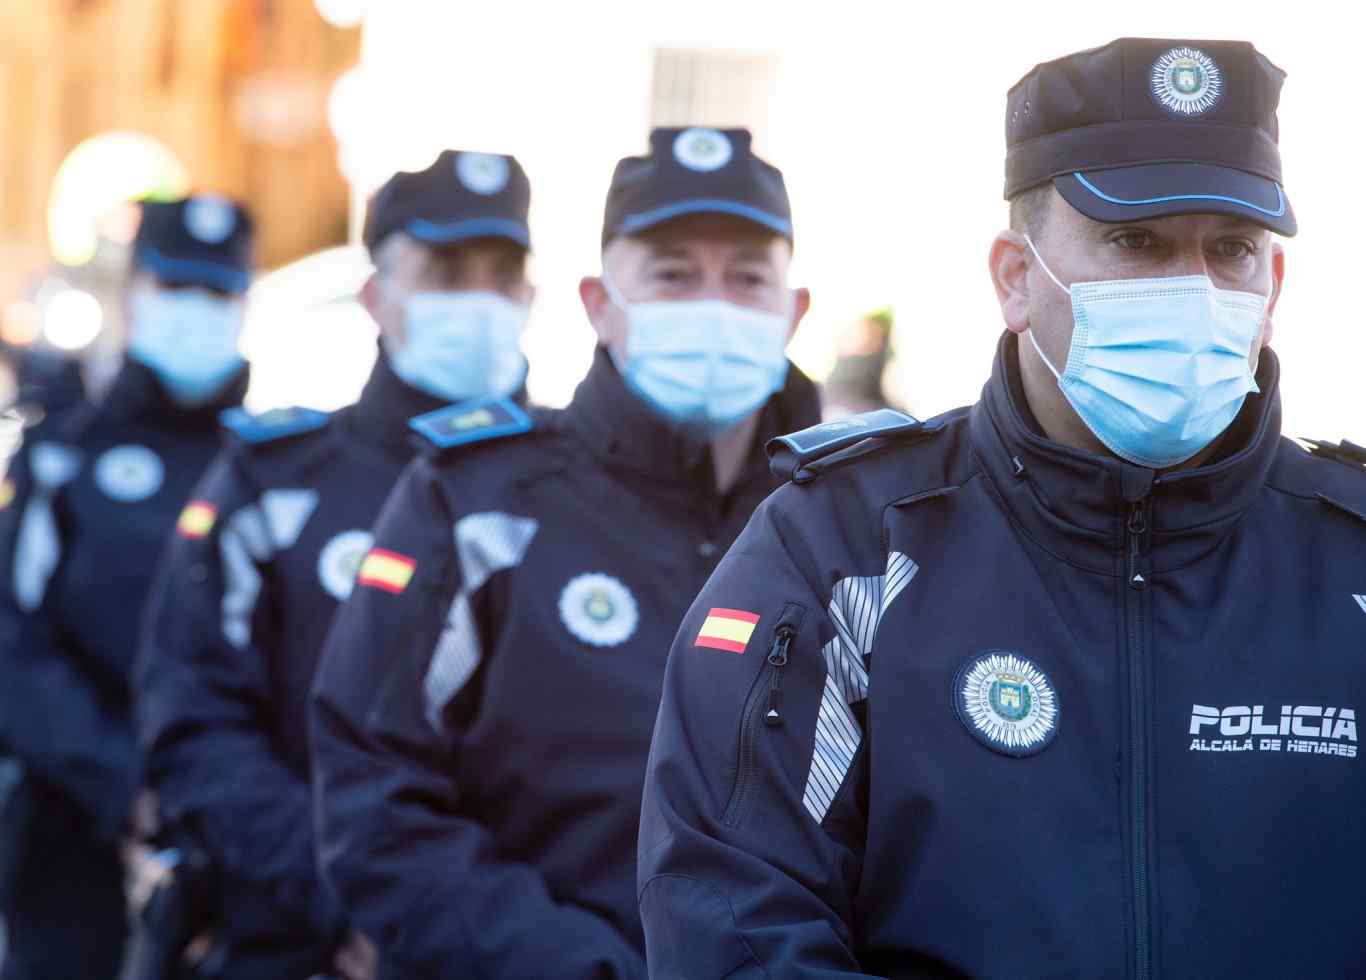 La Policía de Alcalá de Henares estrena nuevos uniformes para sus agentes - Dream Alcalá